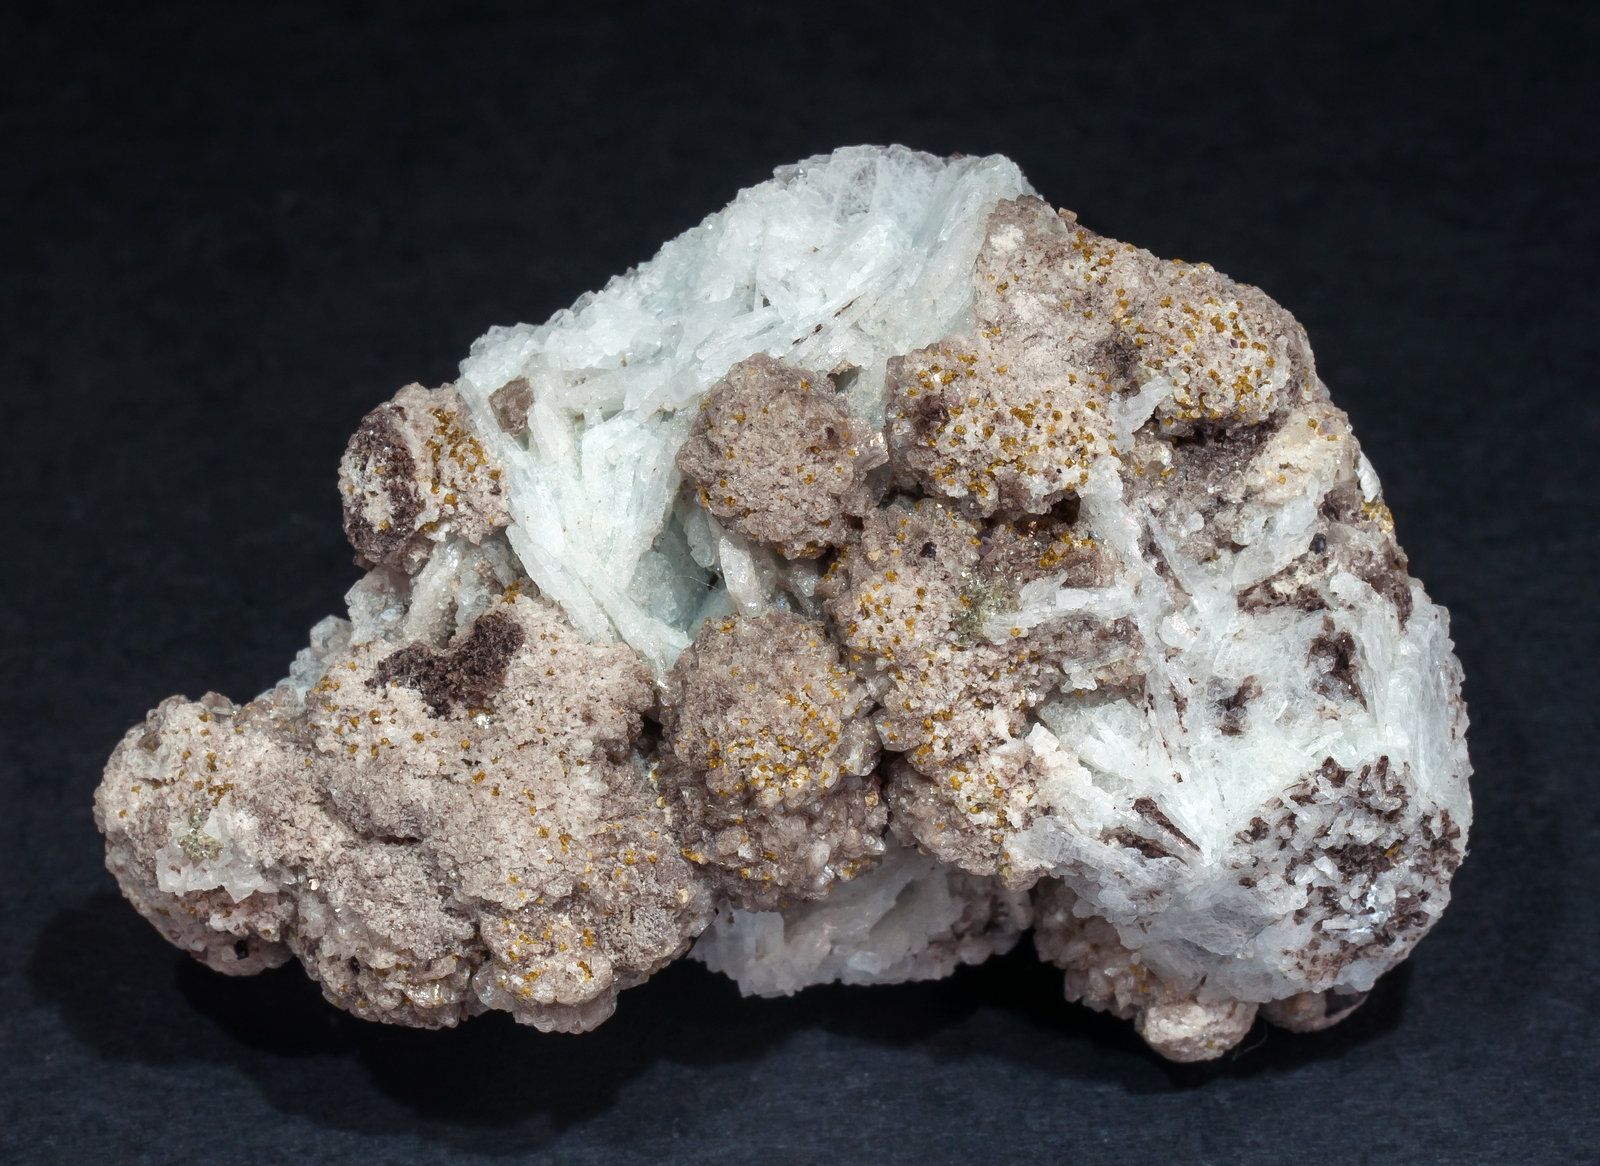 specimens/s_imagesAM5/Stokesite-TH28AM5r.jpg